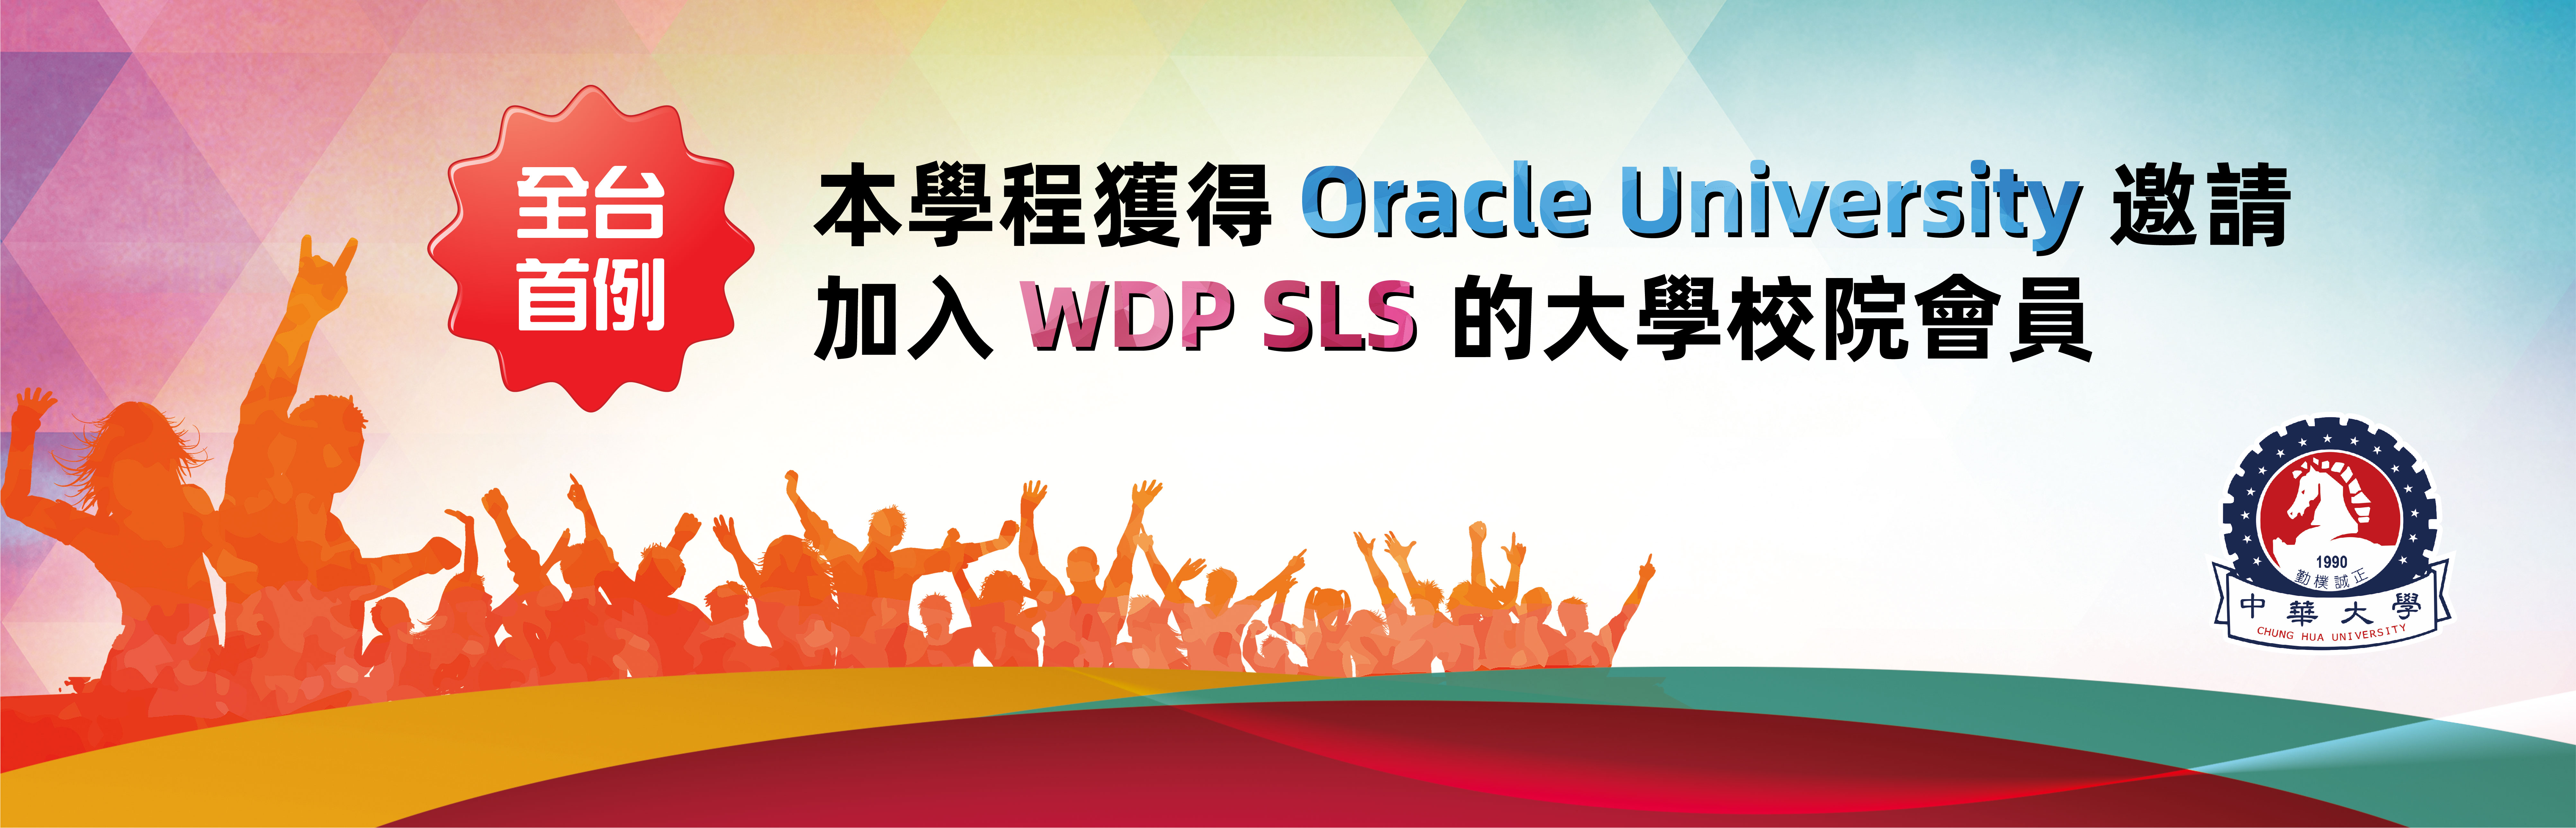 本學程獲得 Oracle University 邀請加入 WDP SLS 的大學校院會員